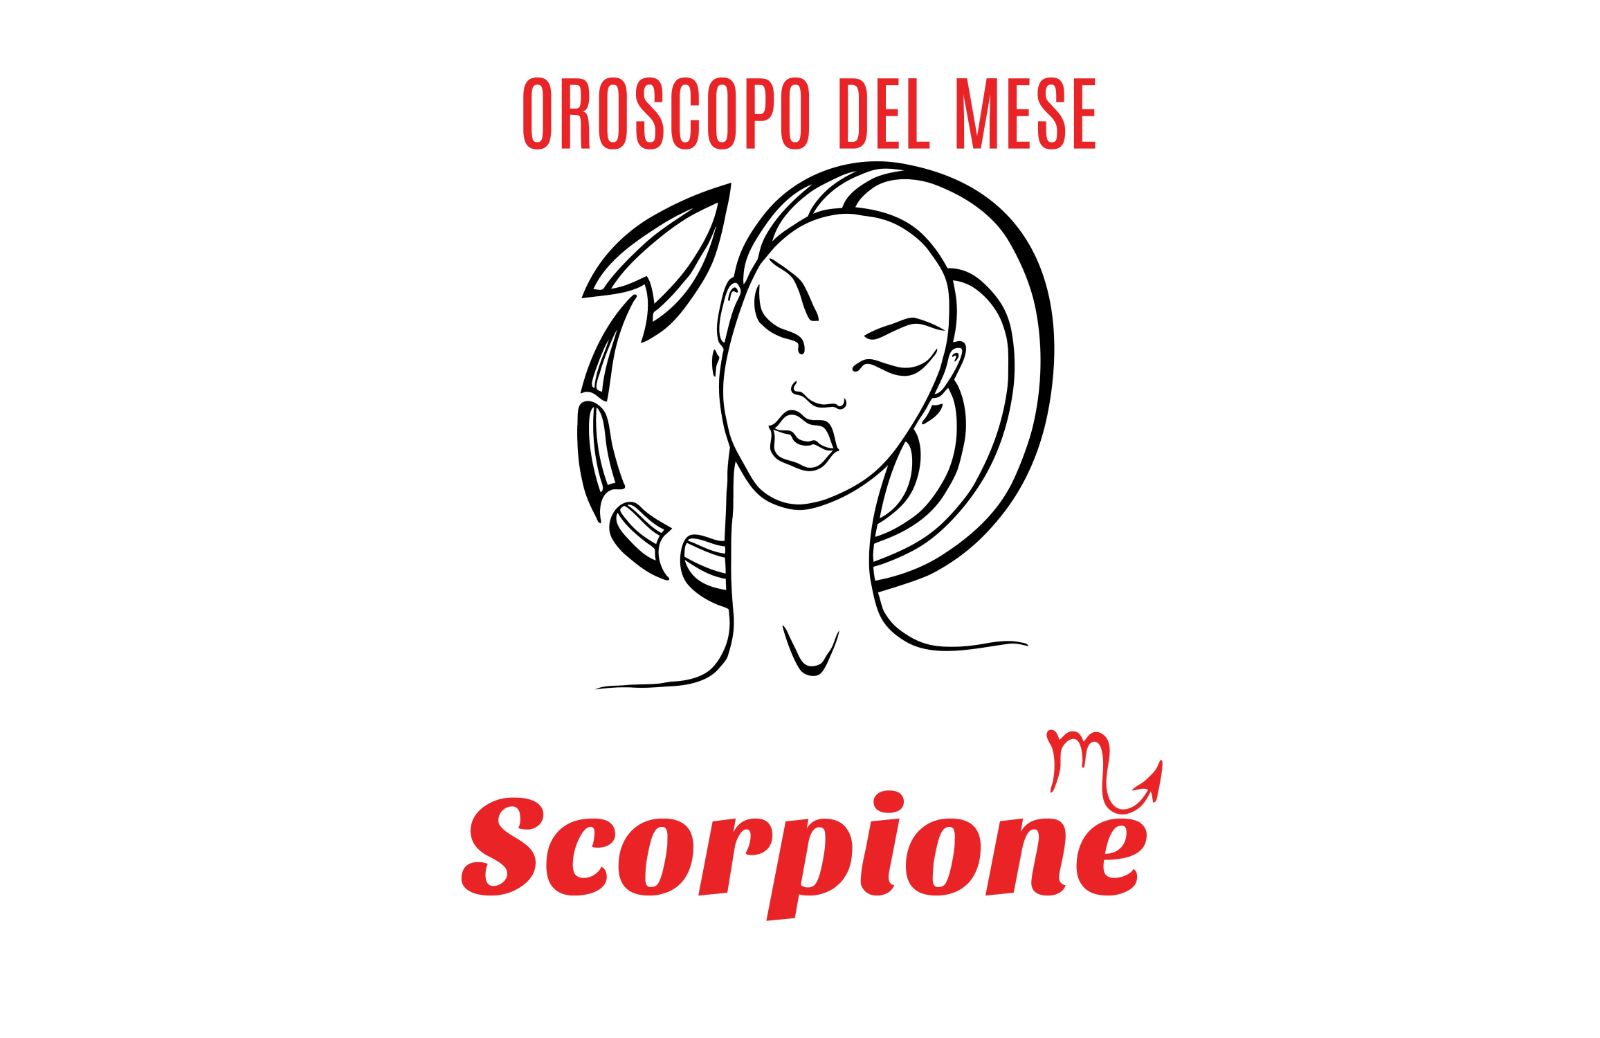 Oroscopo del mese: Scorpione - luglio 2020